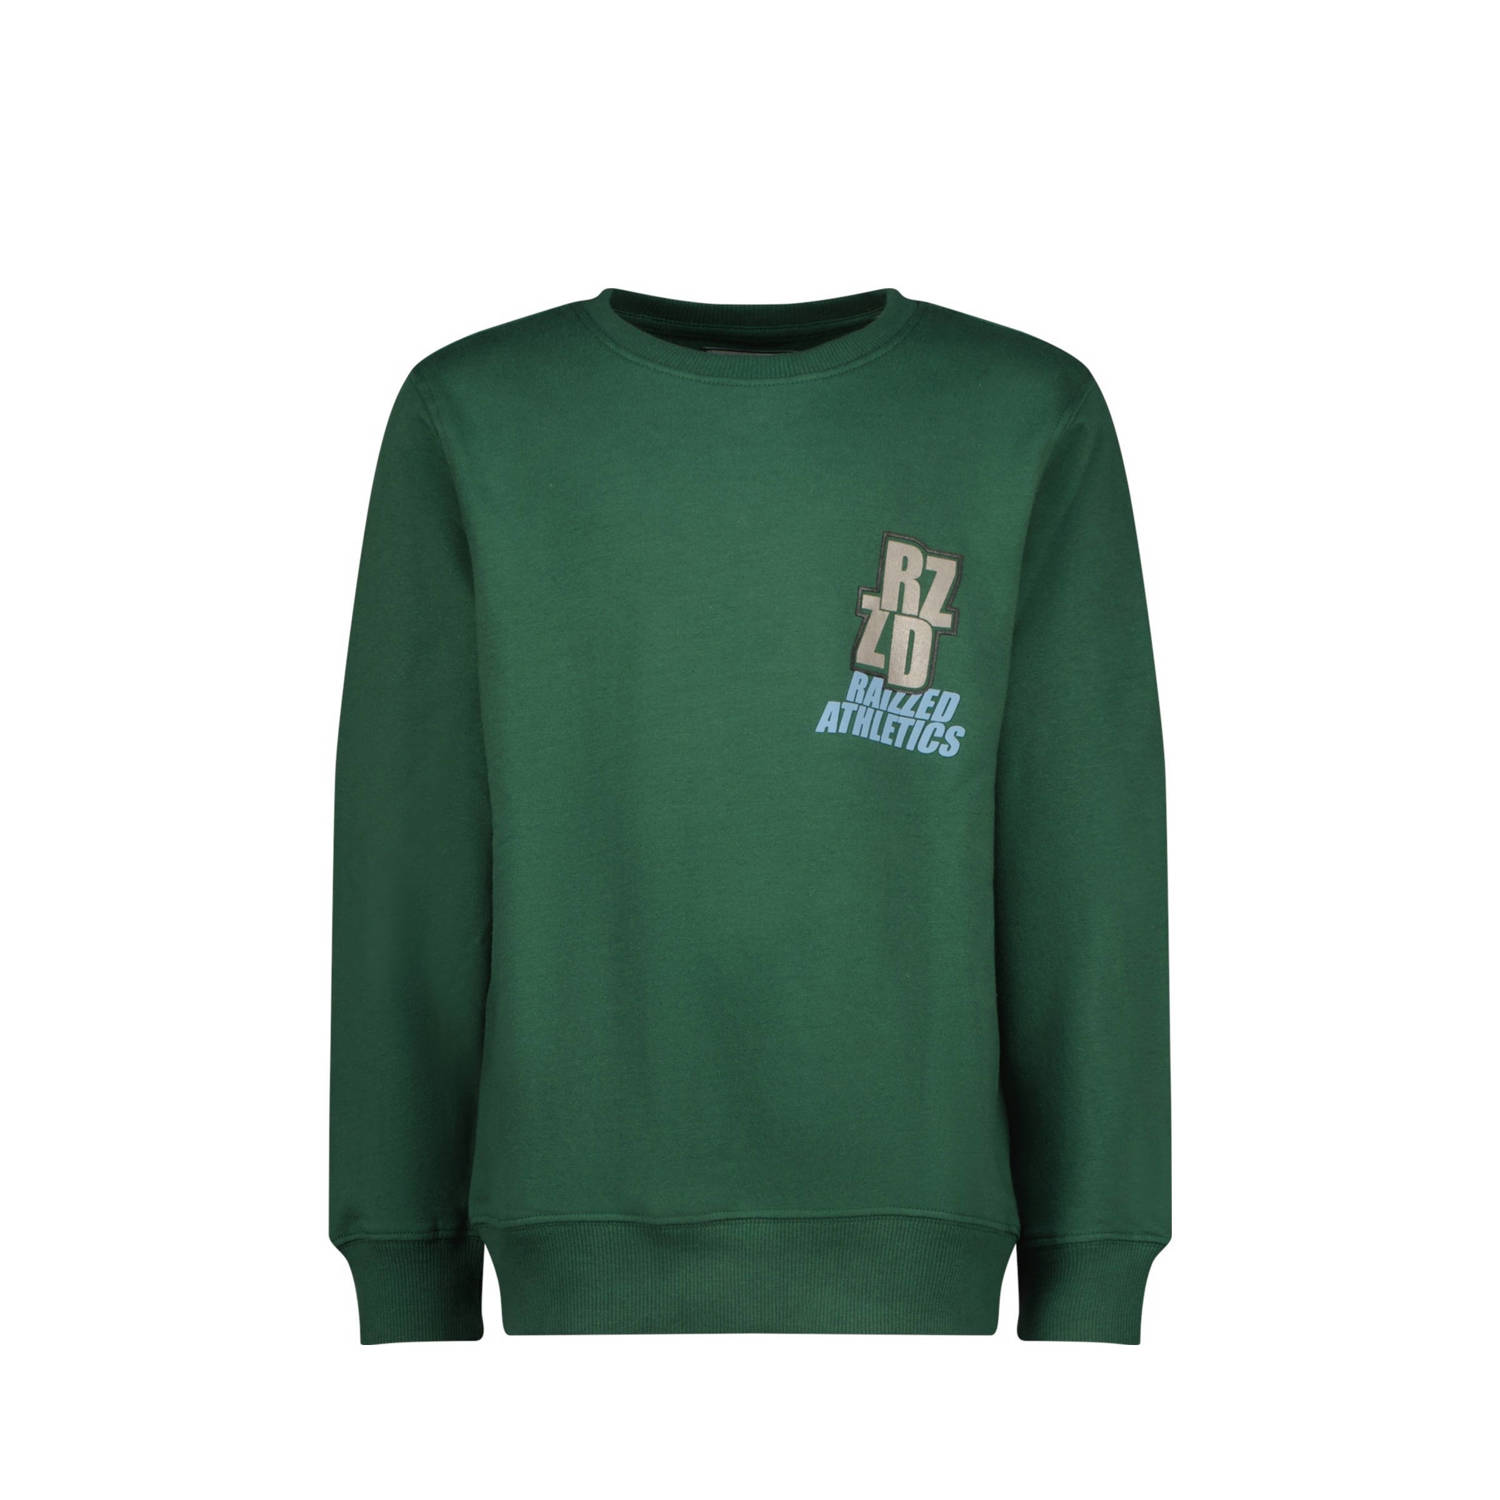 Raizzed sweater Monroe met printopdruk donkergroen Printopdruk 104